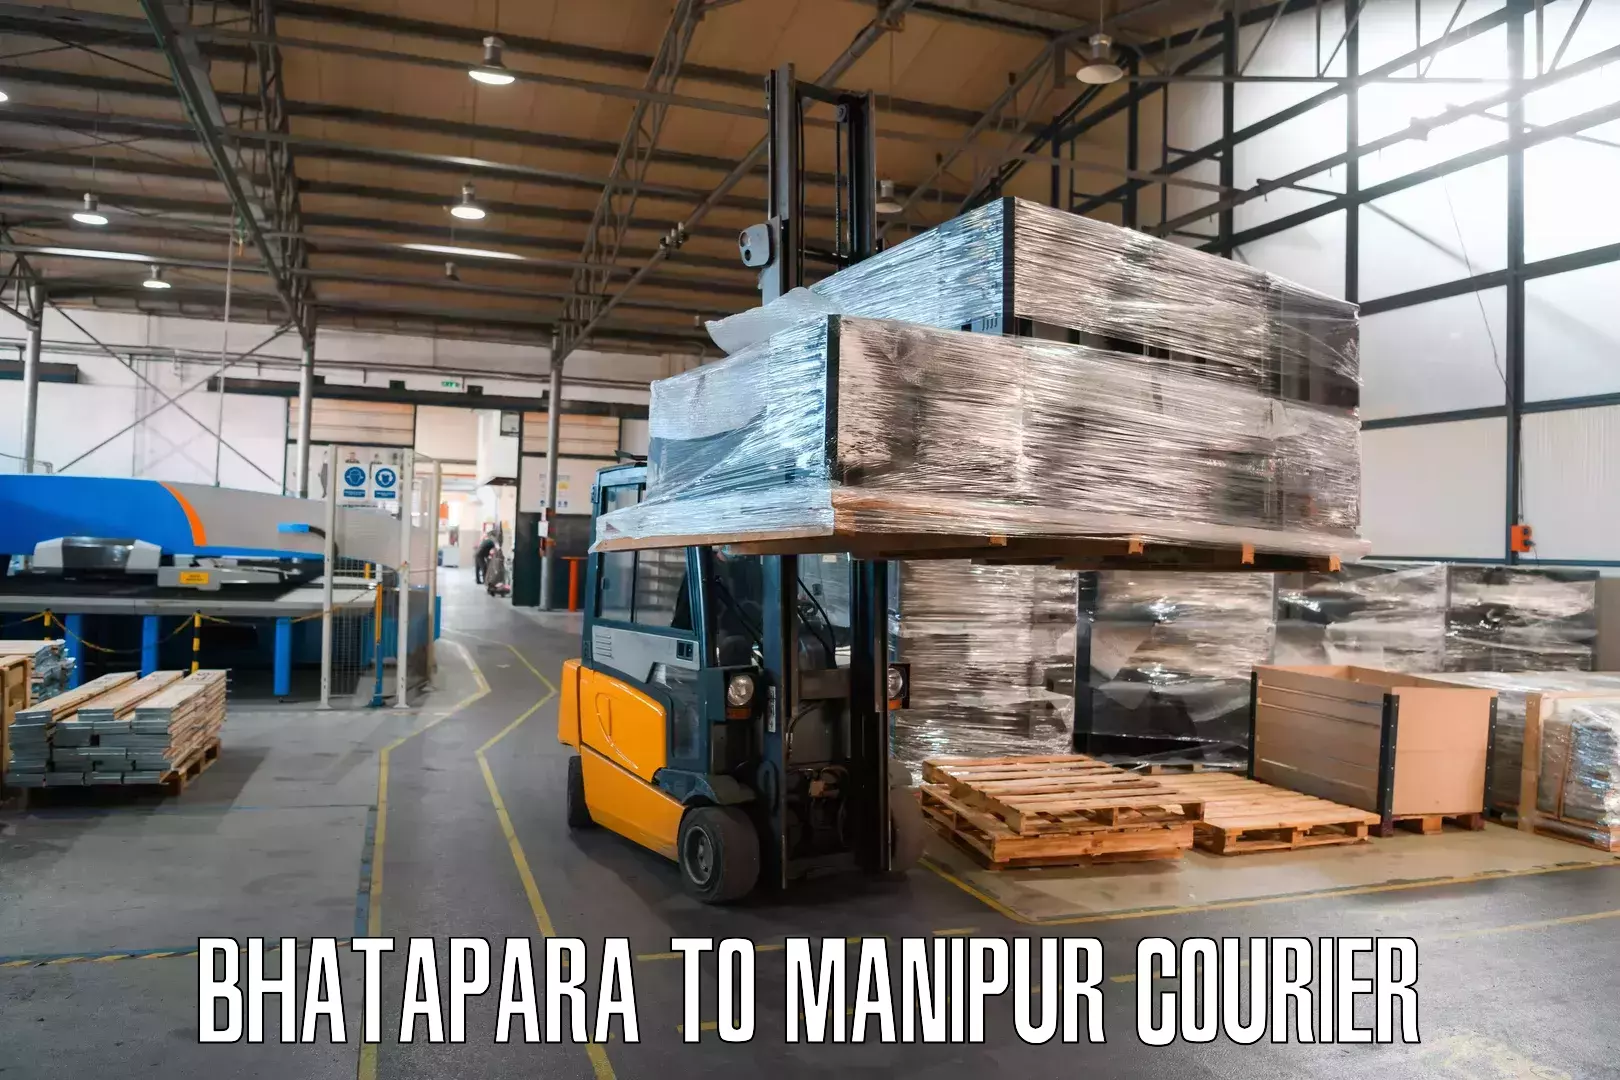 Customized shipping options Bhatapara to Ukhrul